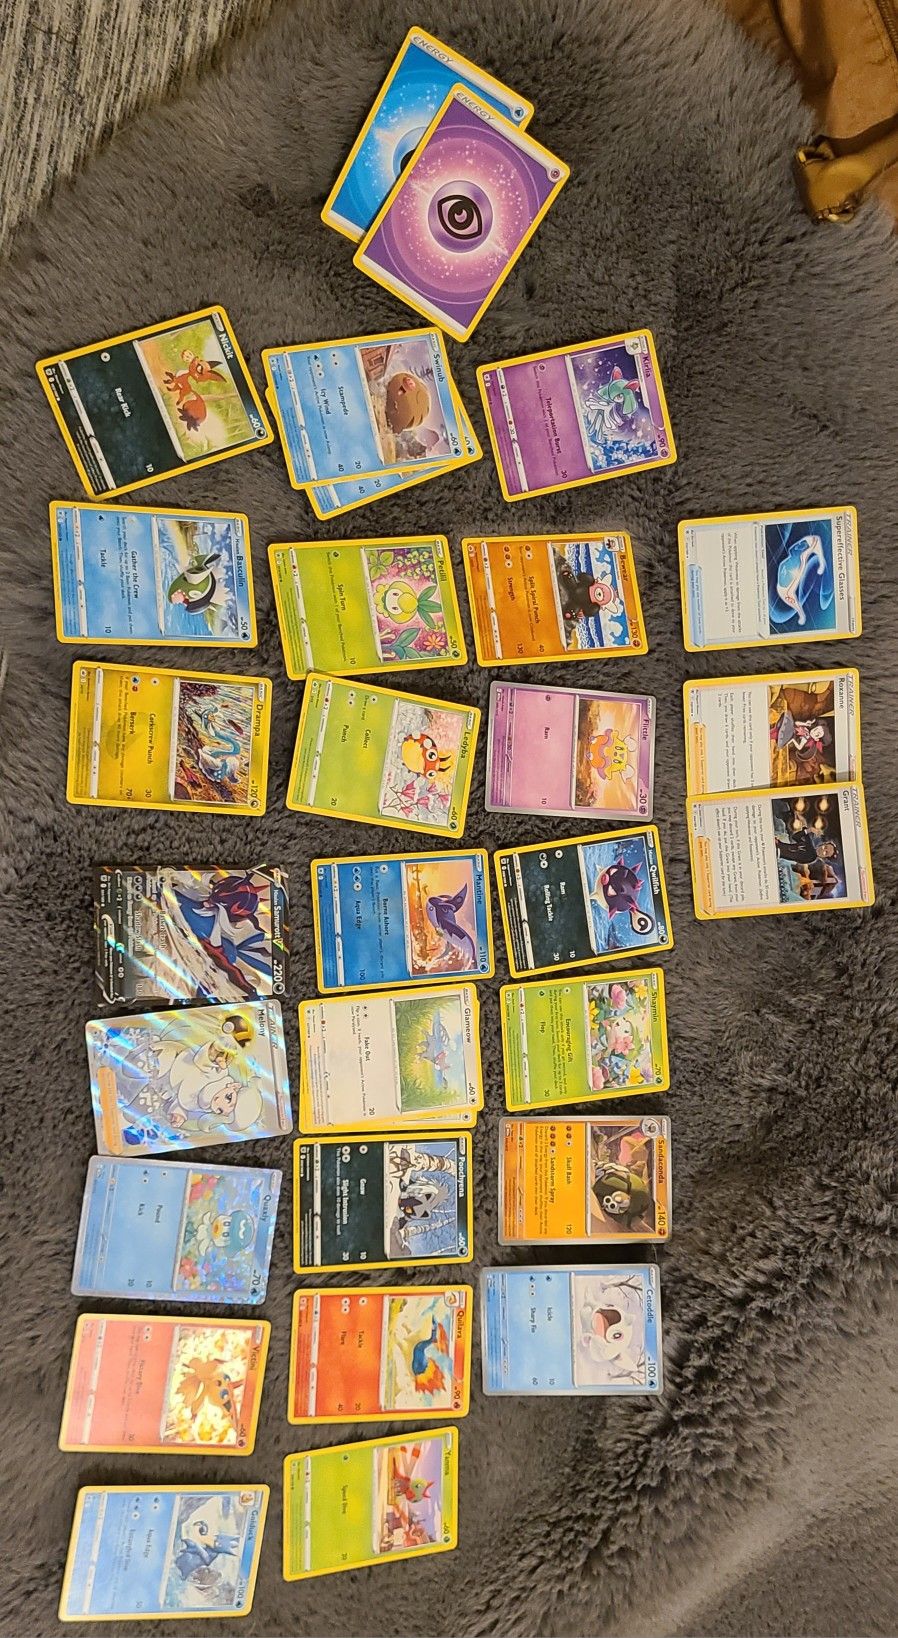 Various Pokémon Cards